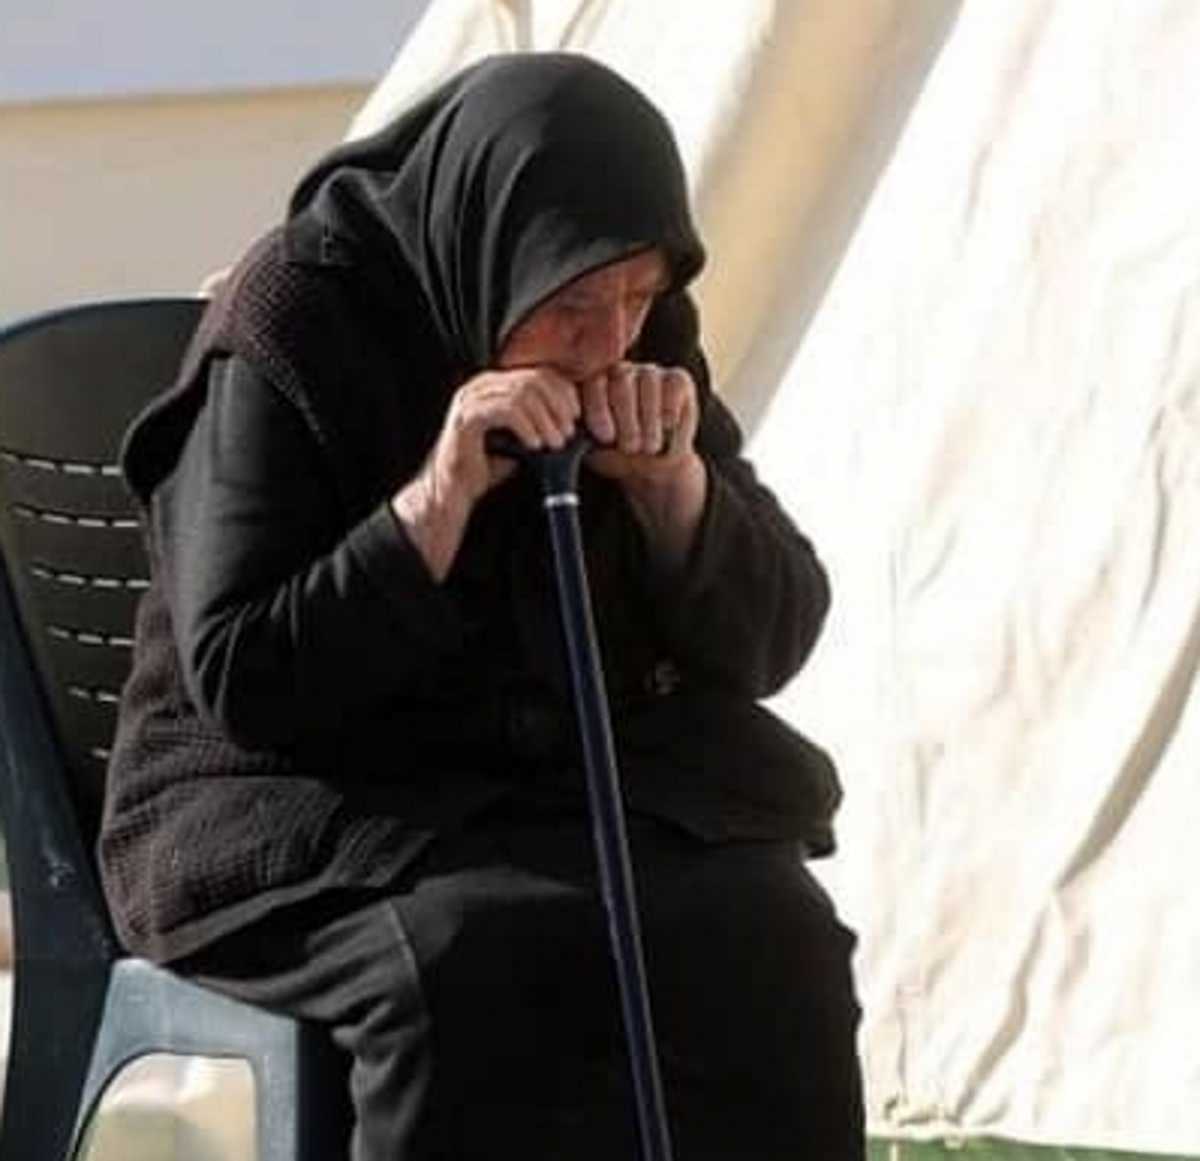 Σεισμός στην Κρήτη: Αυτή είναι η νέα τραγική πραγματικότητα της σούπερ γιαγιάς που έκανε θραύση το 2017